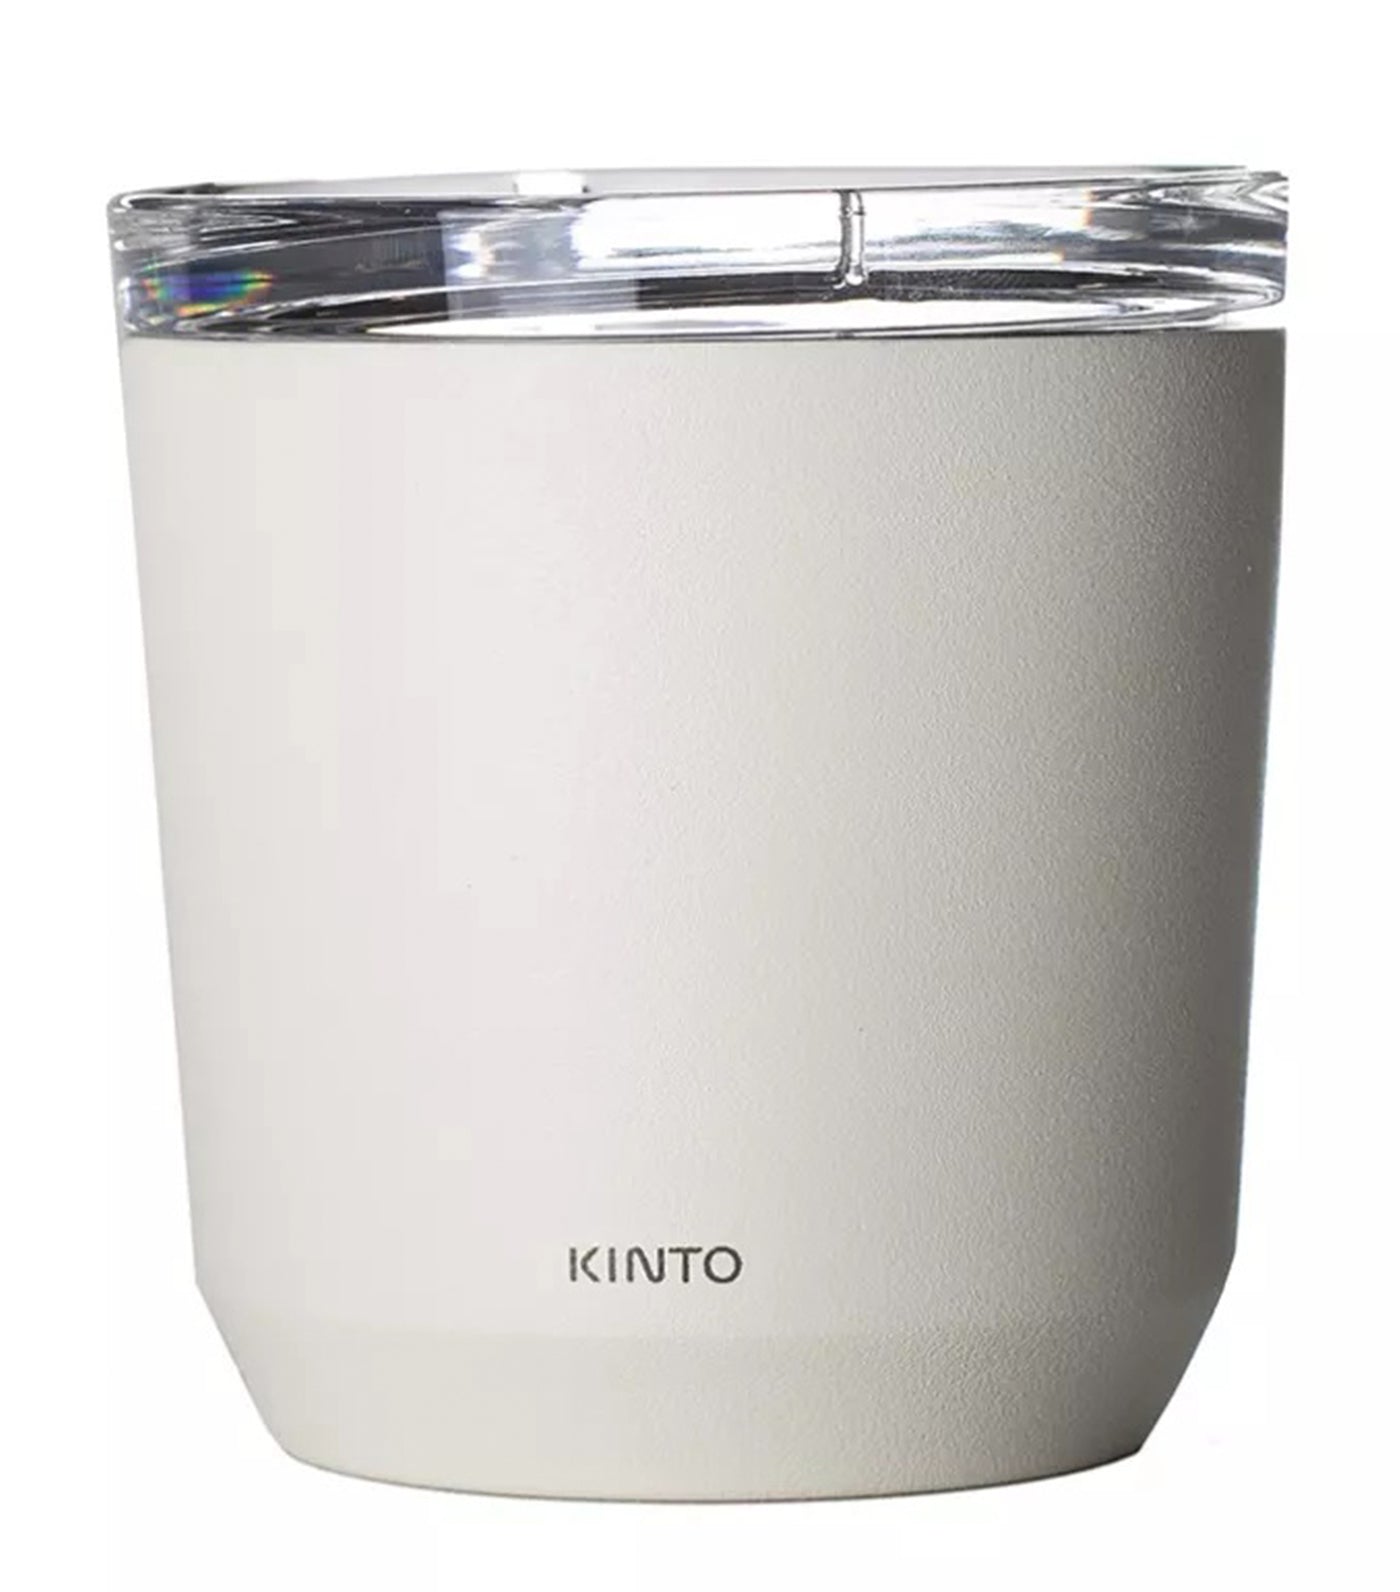 Kinto To Go Tumbler with Plug